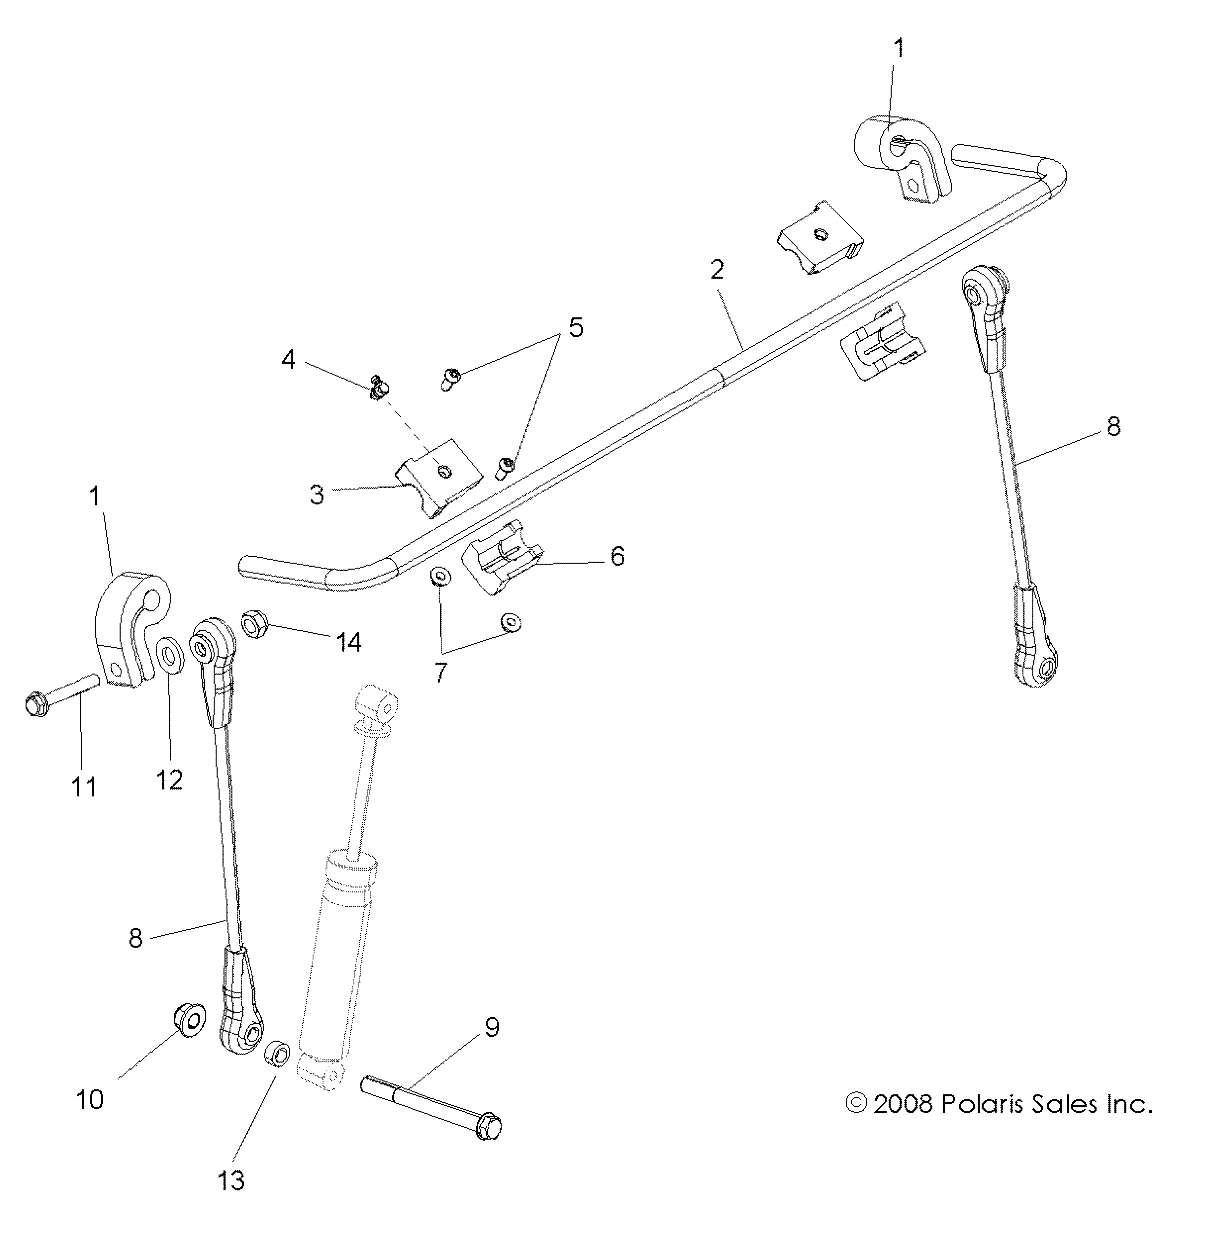 Foto diagrama Polaris que contem a peça 1521115